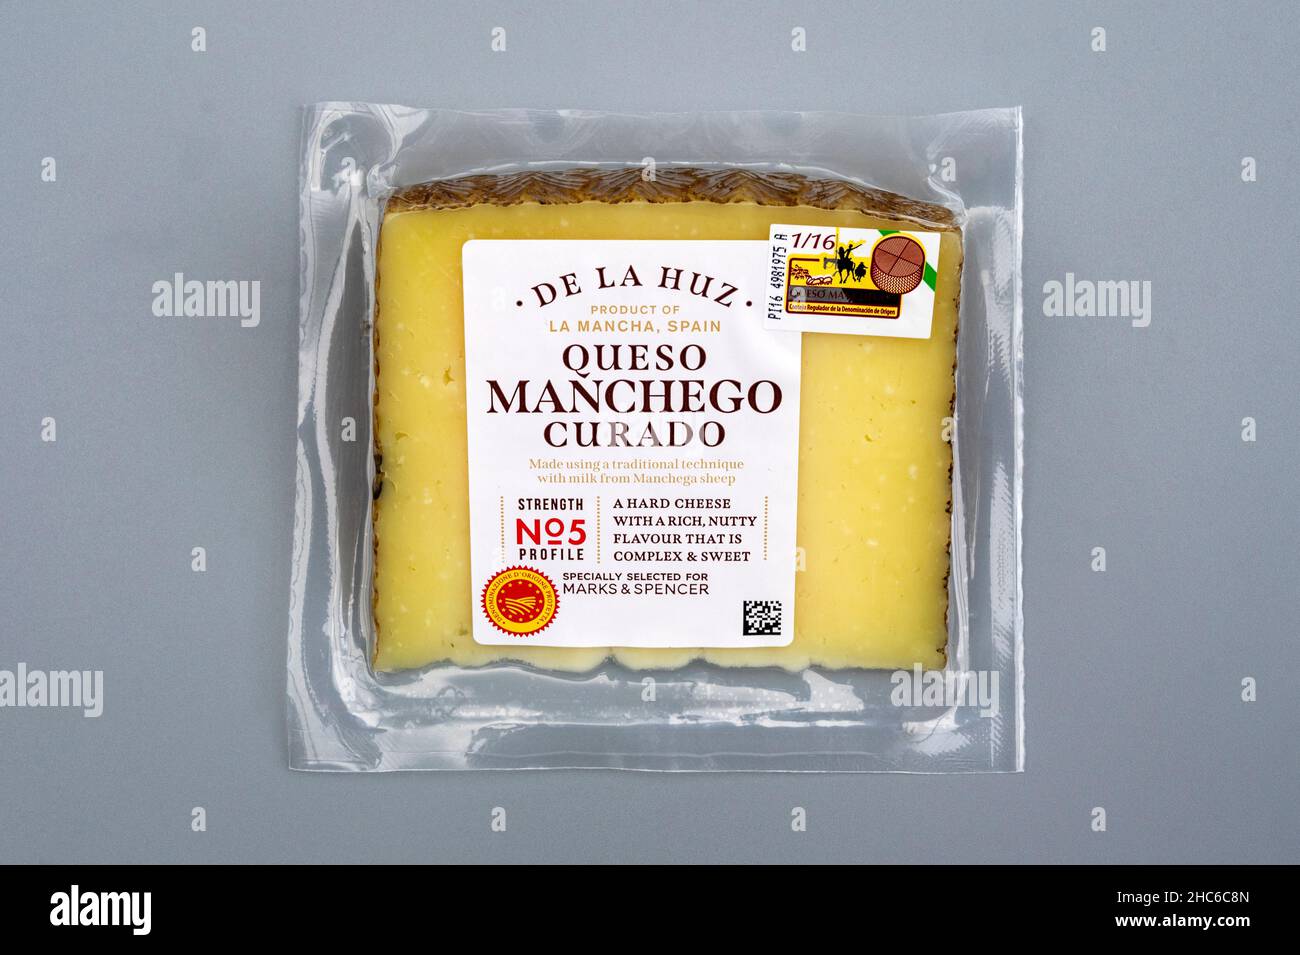 De La Huz Manchego Curado cheese Stock Photo